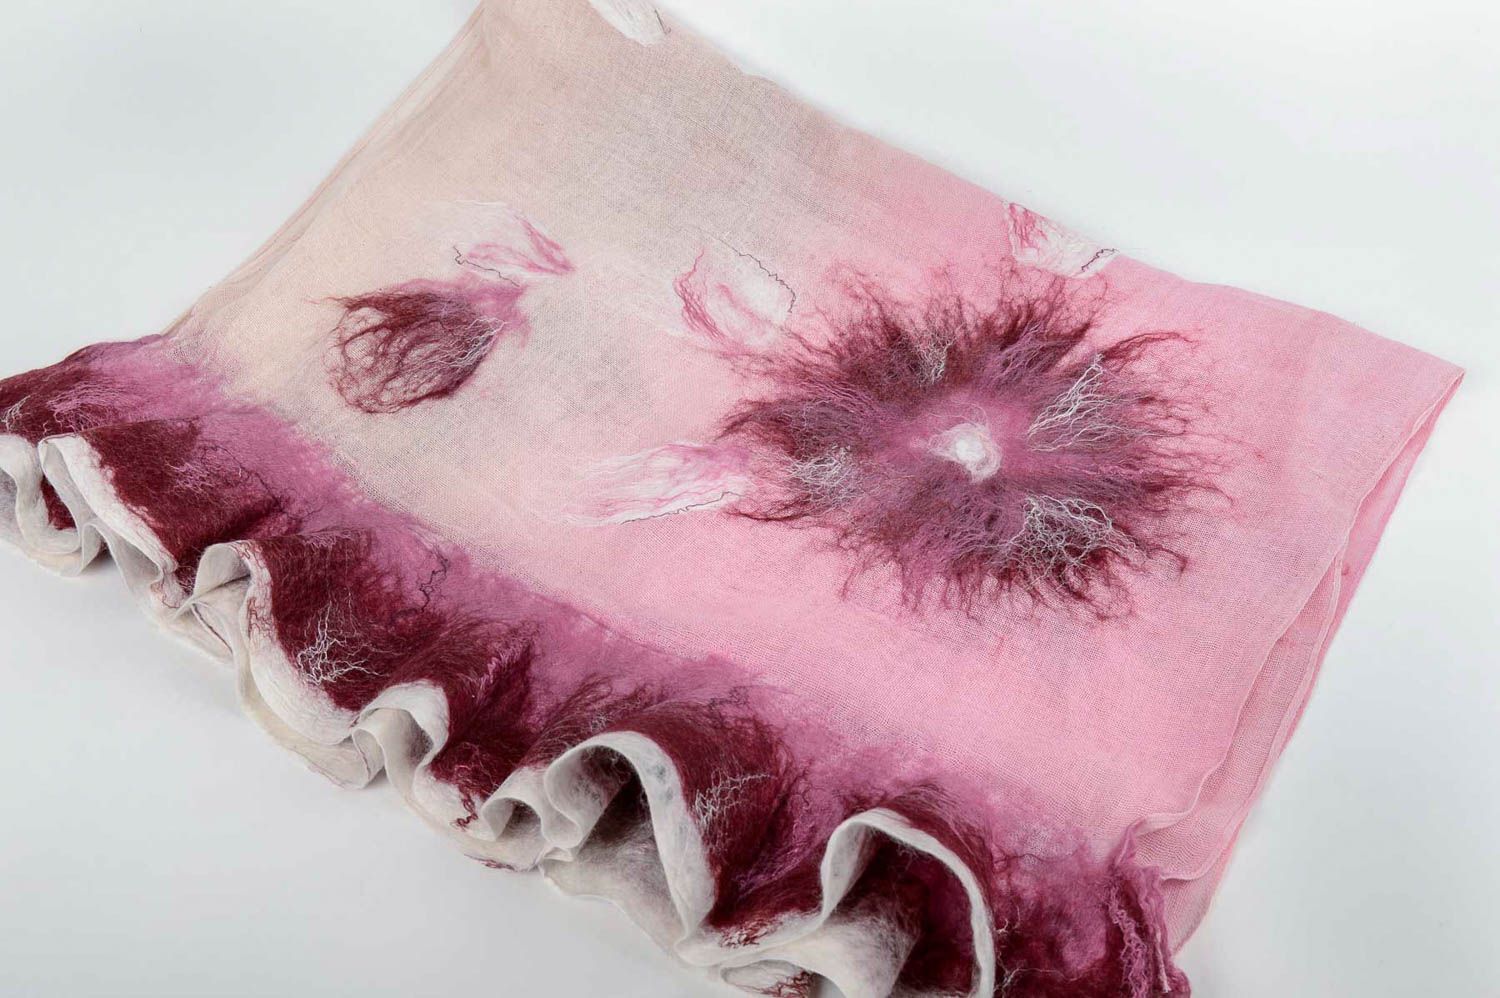 Handmade gefilzter Schal Frauen Accessoire Geschenk für Frau schön rosa foto 3